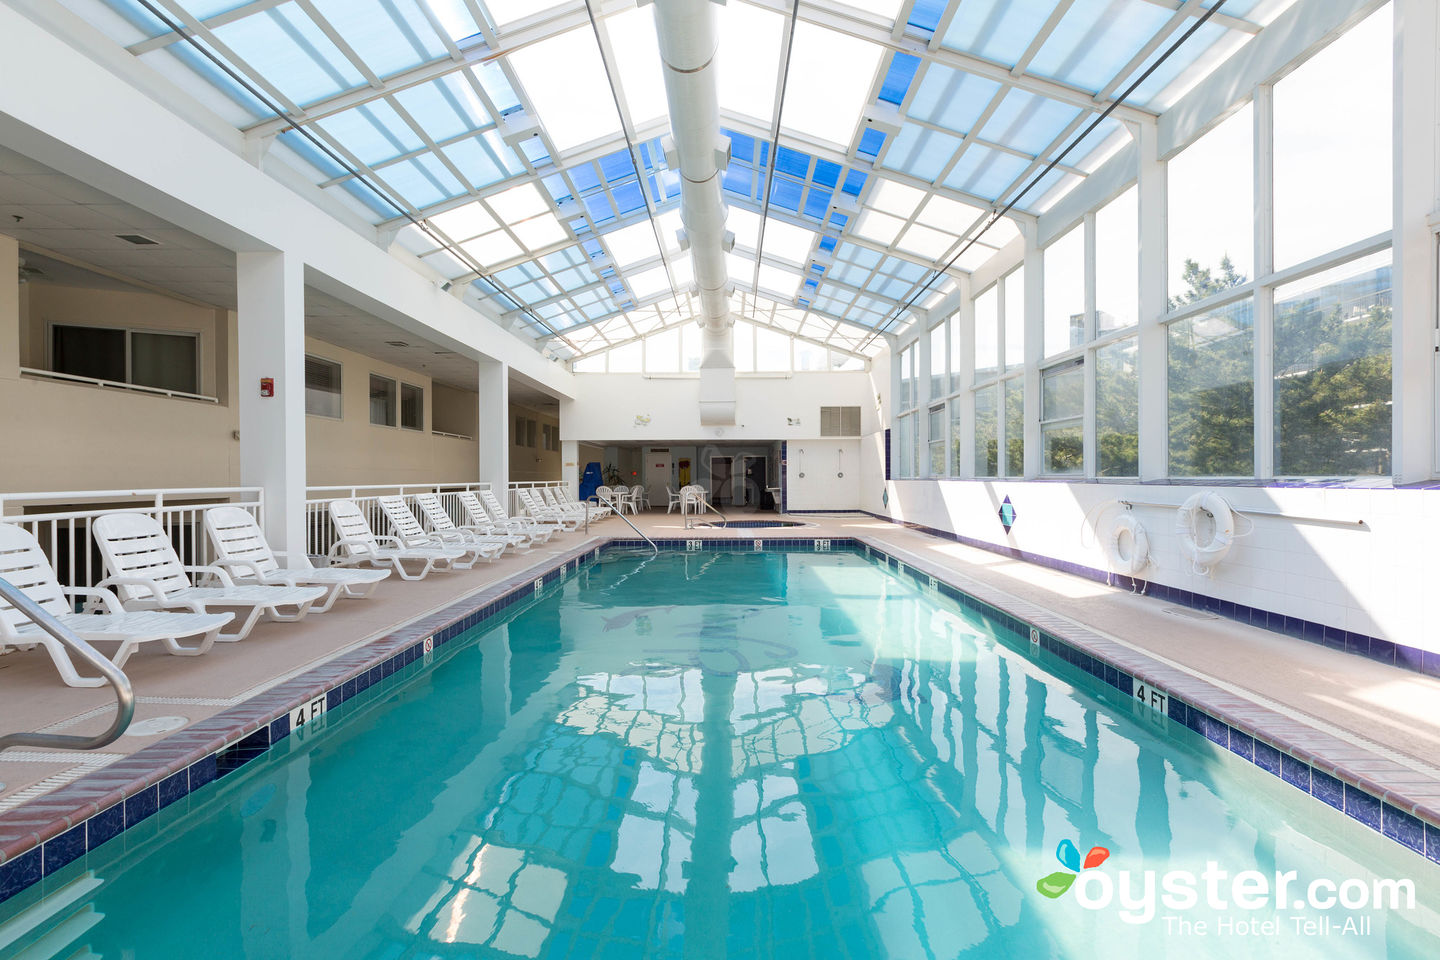 Watson’s Regency Suites indoor pool